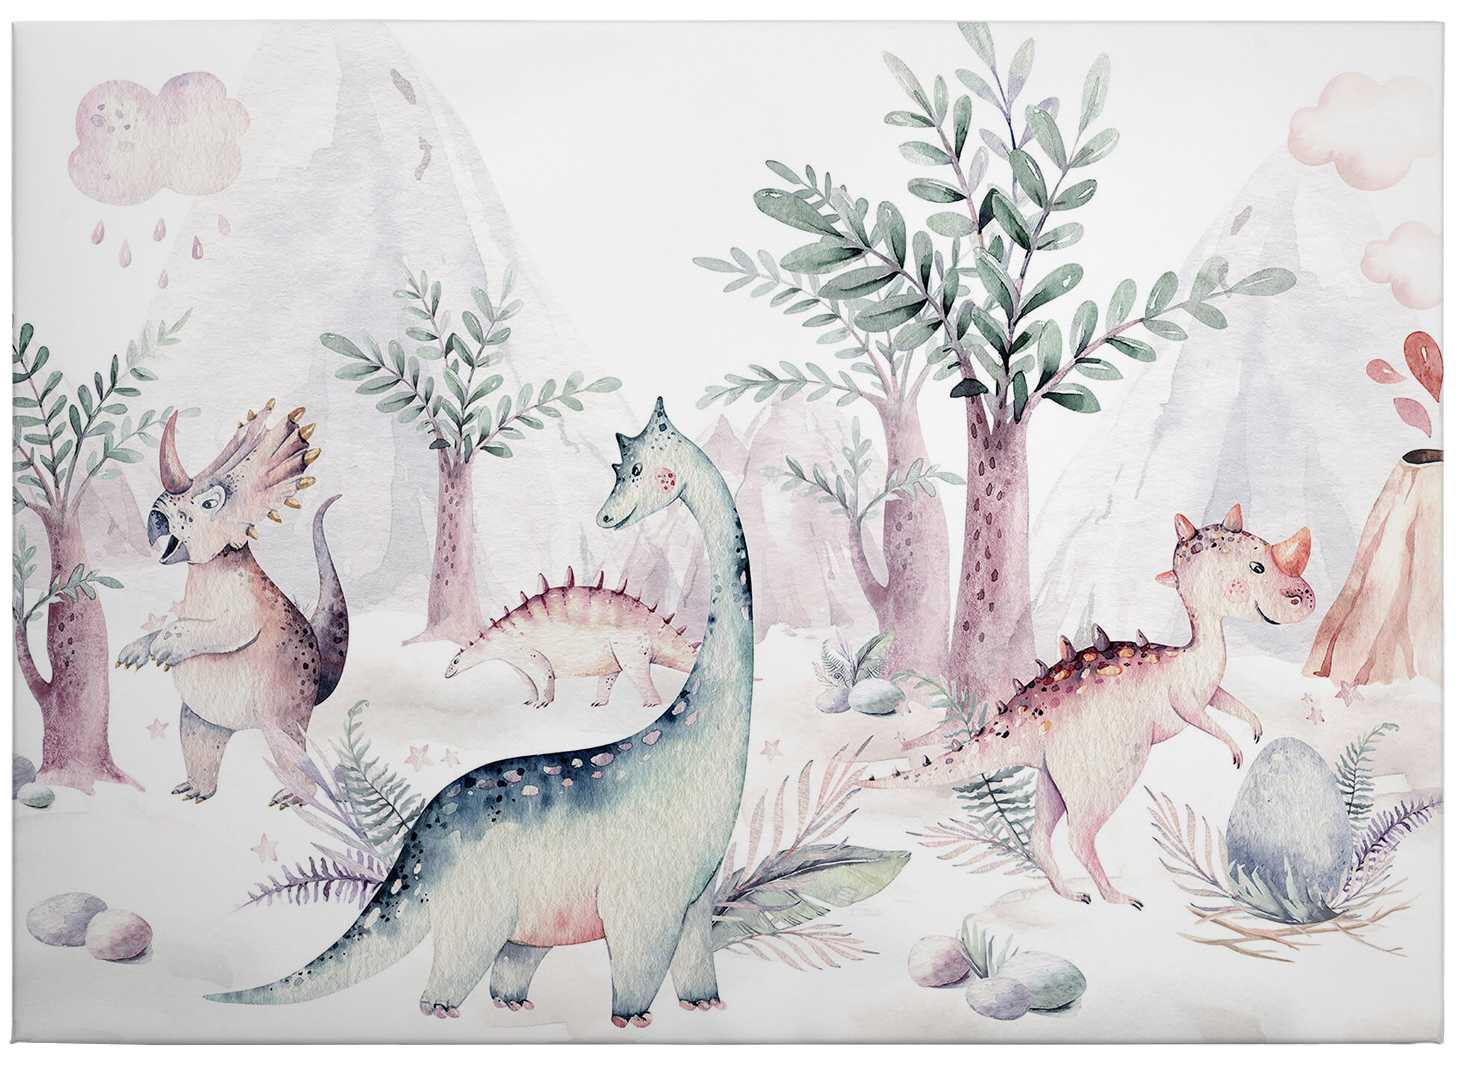             Toile Dinosaures enfants aquarelle de Kvilis - 0,70 m x 0,50 m
        